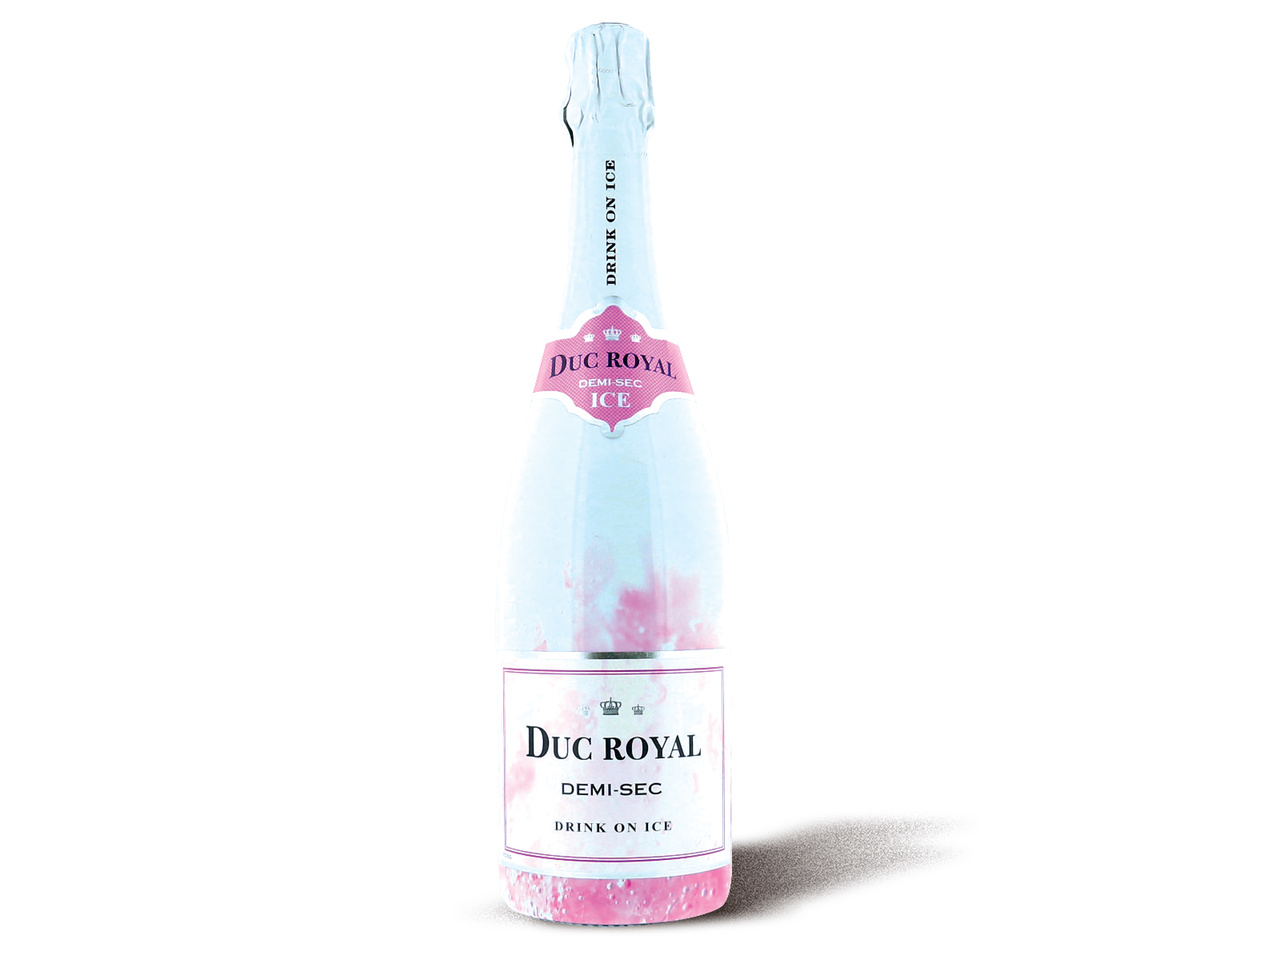 Duc royal vin mousseux Ice1